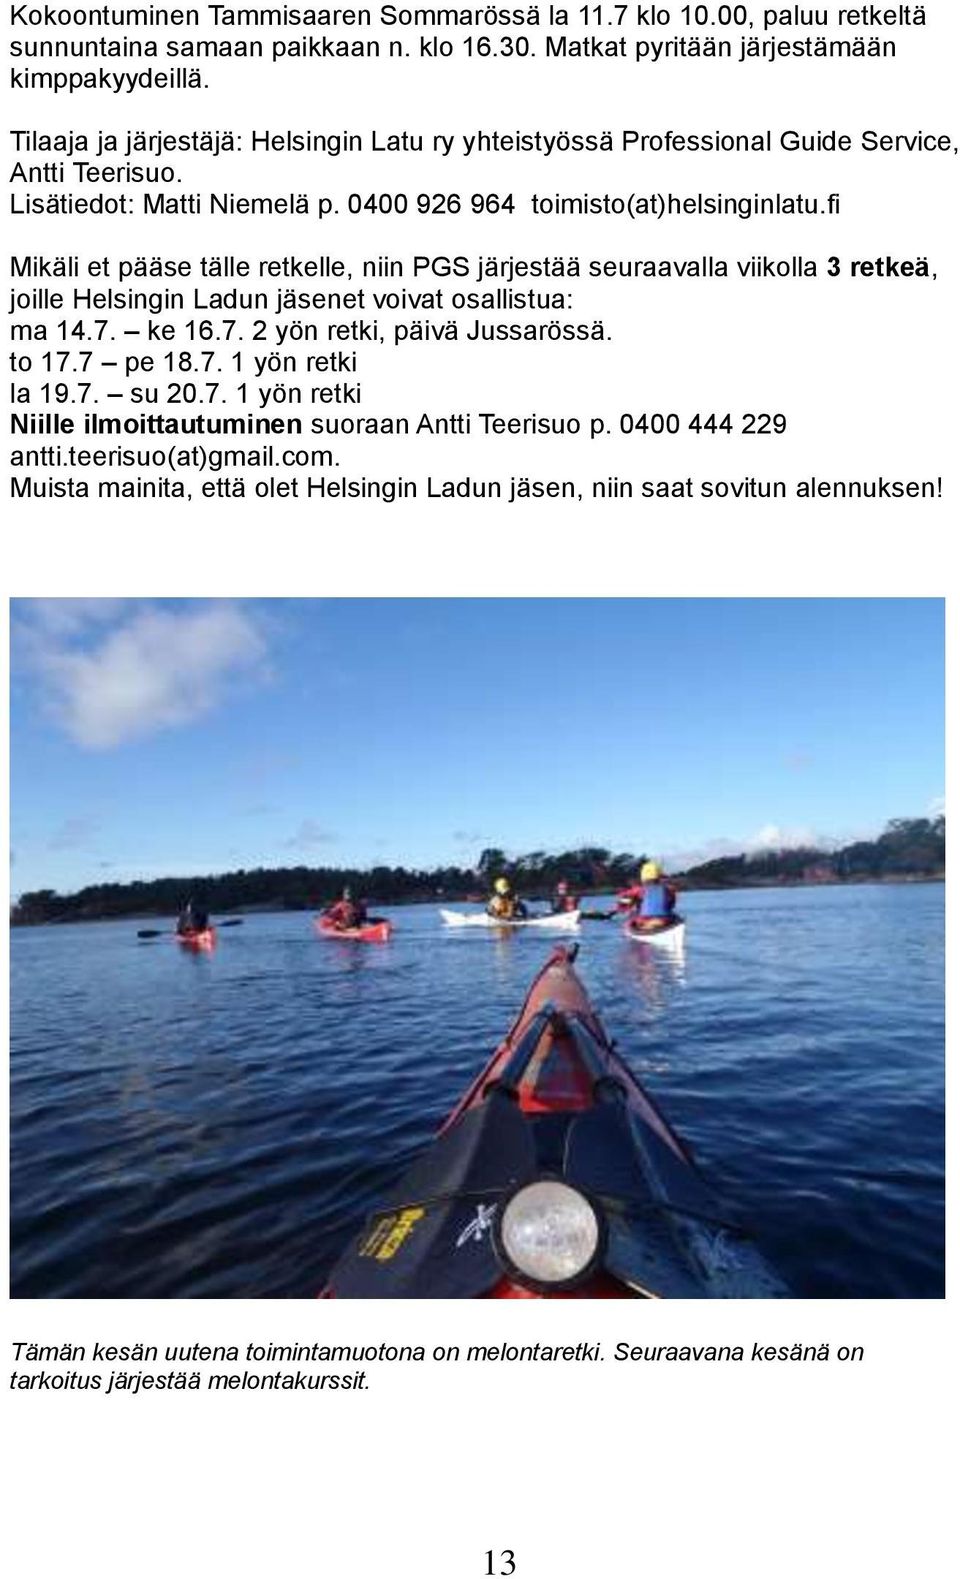 fi Mikäli et pääse tälle retkelle, niin PGS järjestää seuraavalla viikolla 3 retkeä, joille Helsingin Ladun jäsenet voivat osallistua: ma 14.7. ke 16.7. 2 yön retki, päivä Jussarössä. to 17.7 pe 18.7. 1 yön retki la 19.